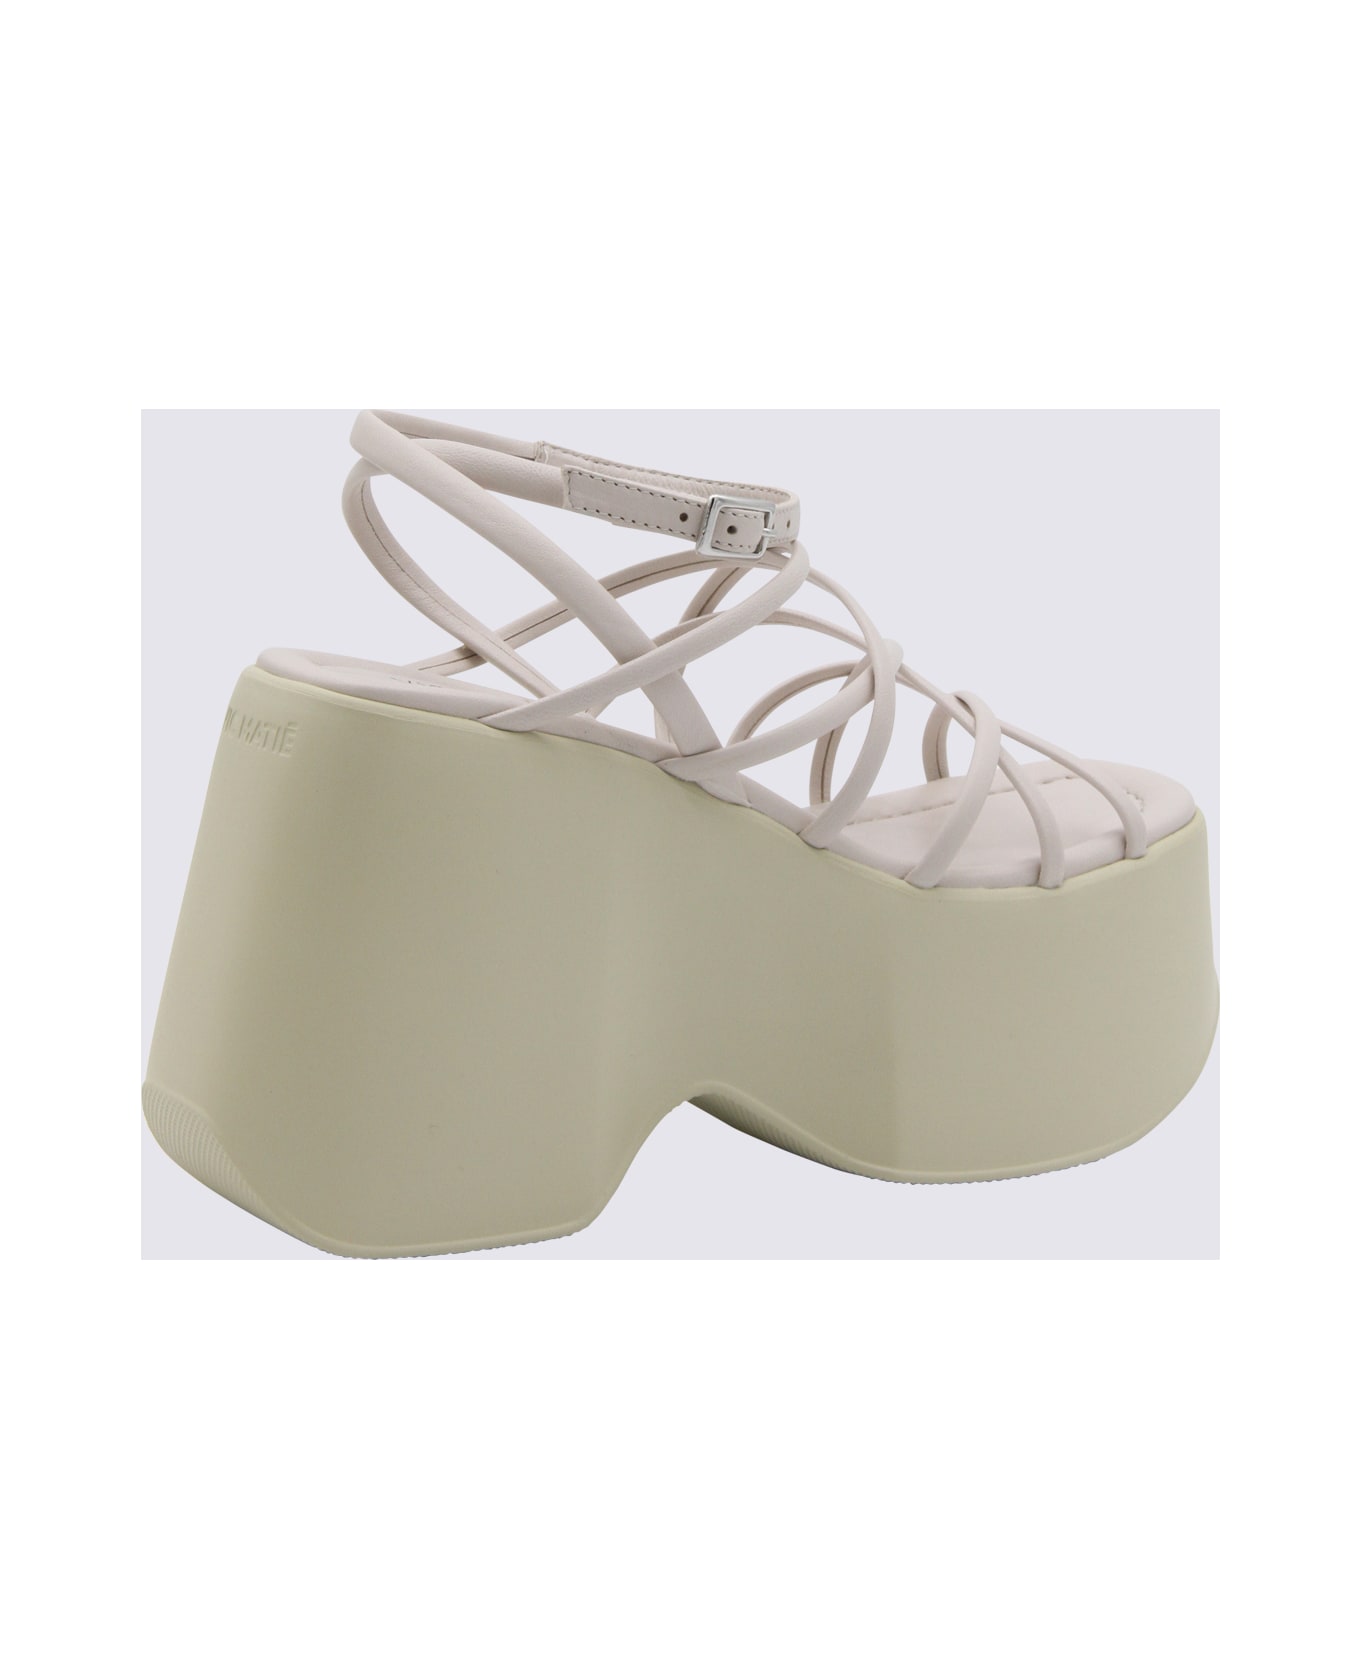 Vic Matié Cream Leather Sandals - DESERT サンダル